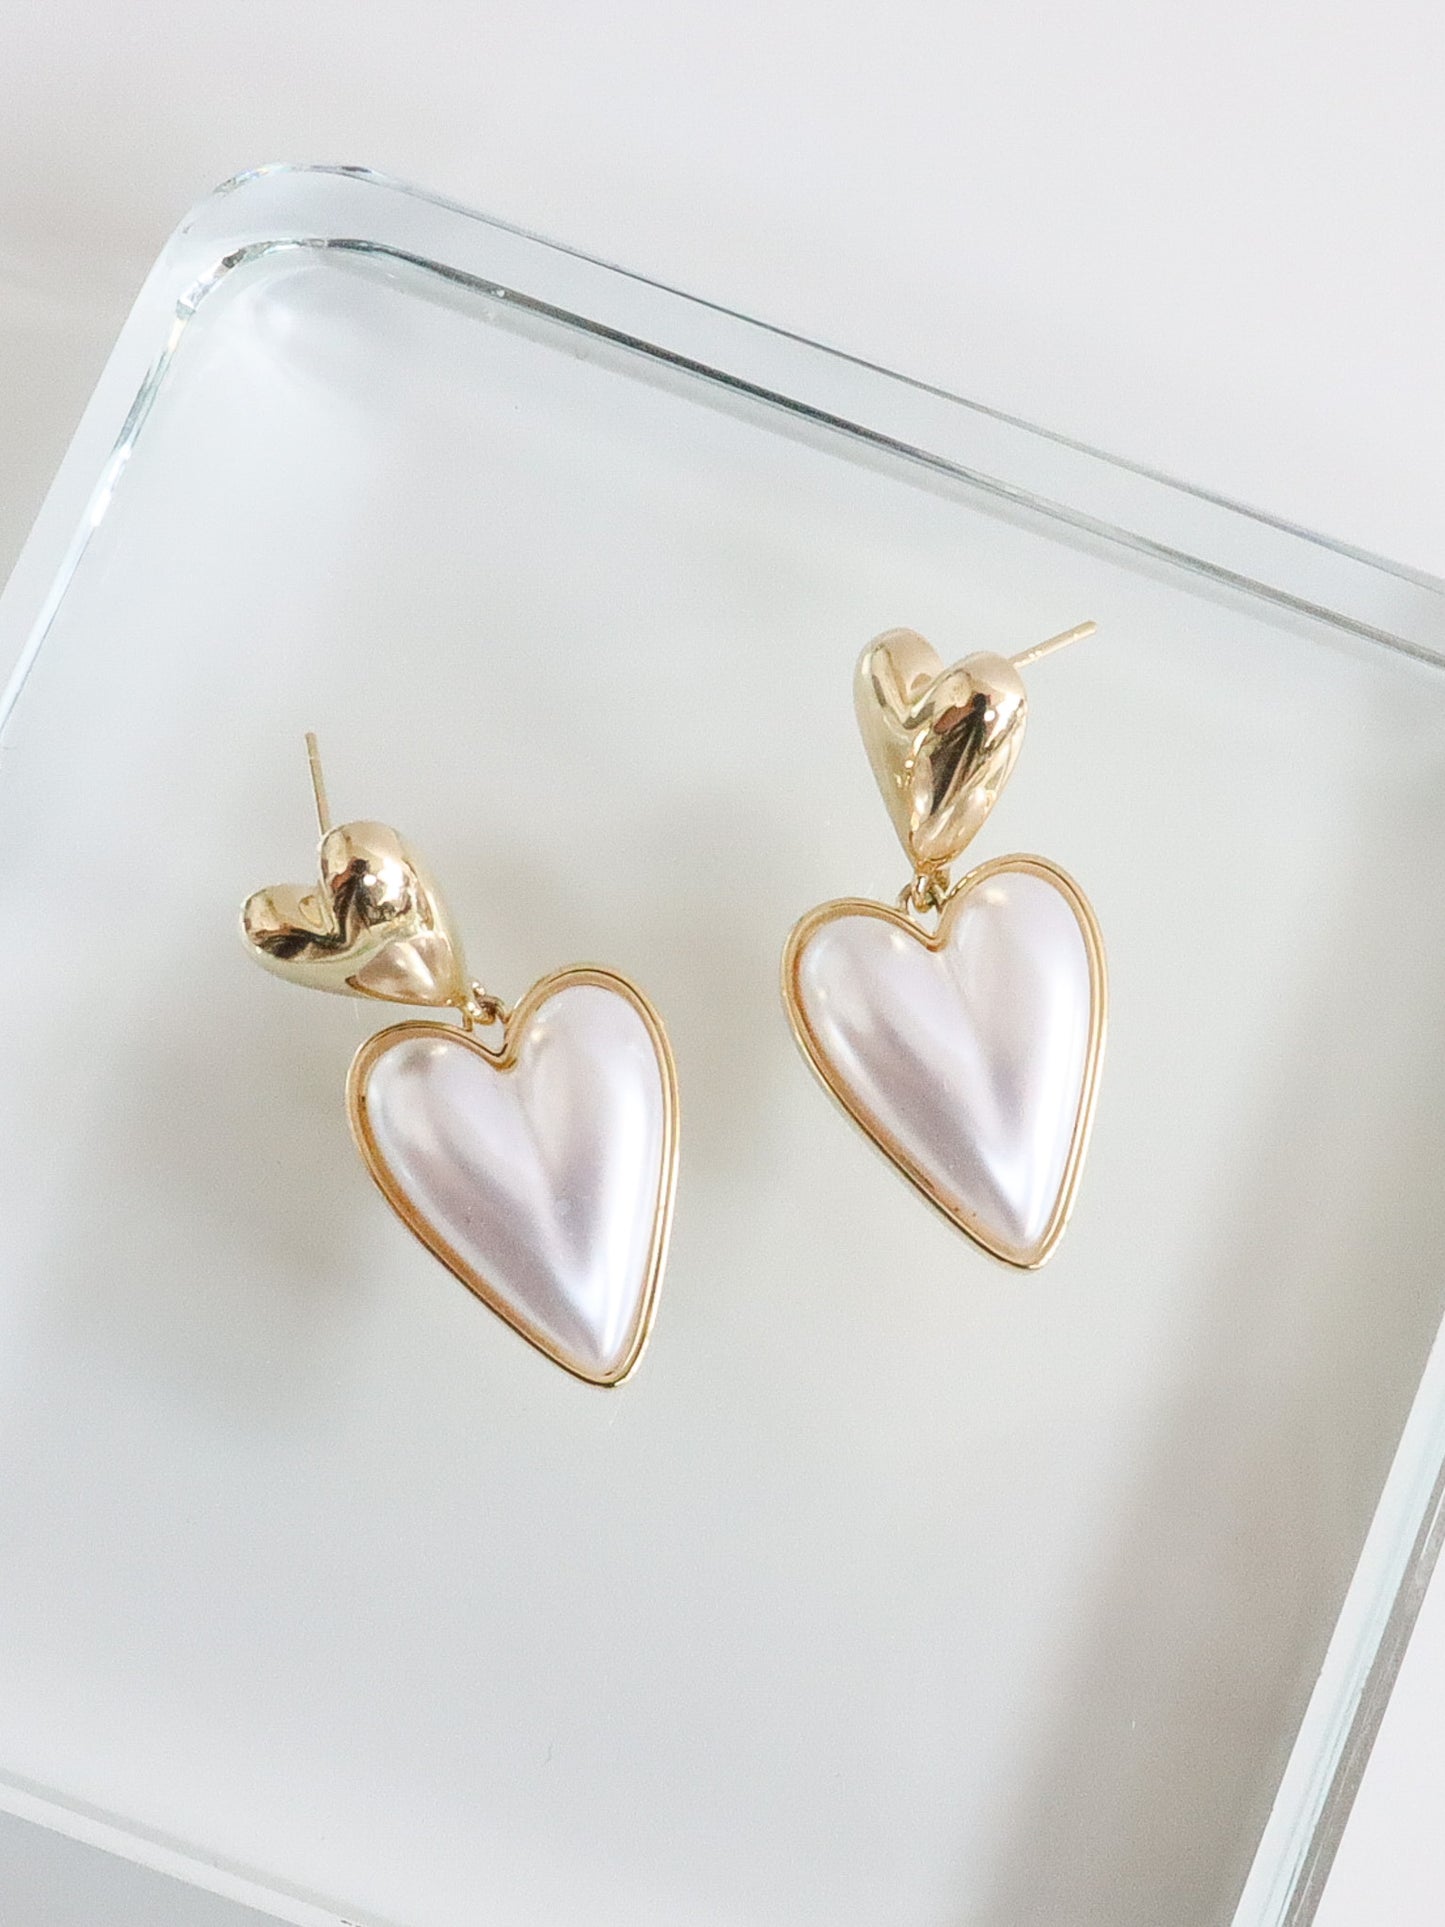 Medallion Heart Earrings